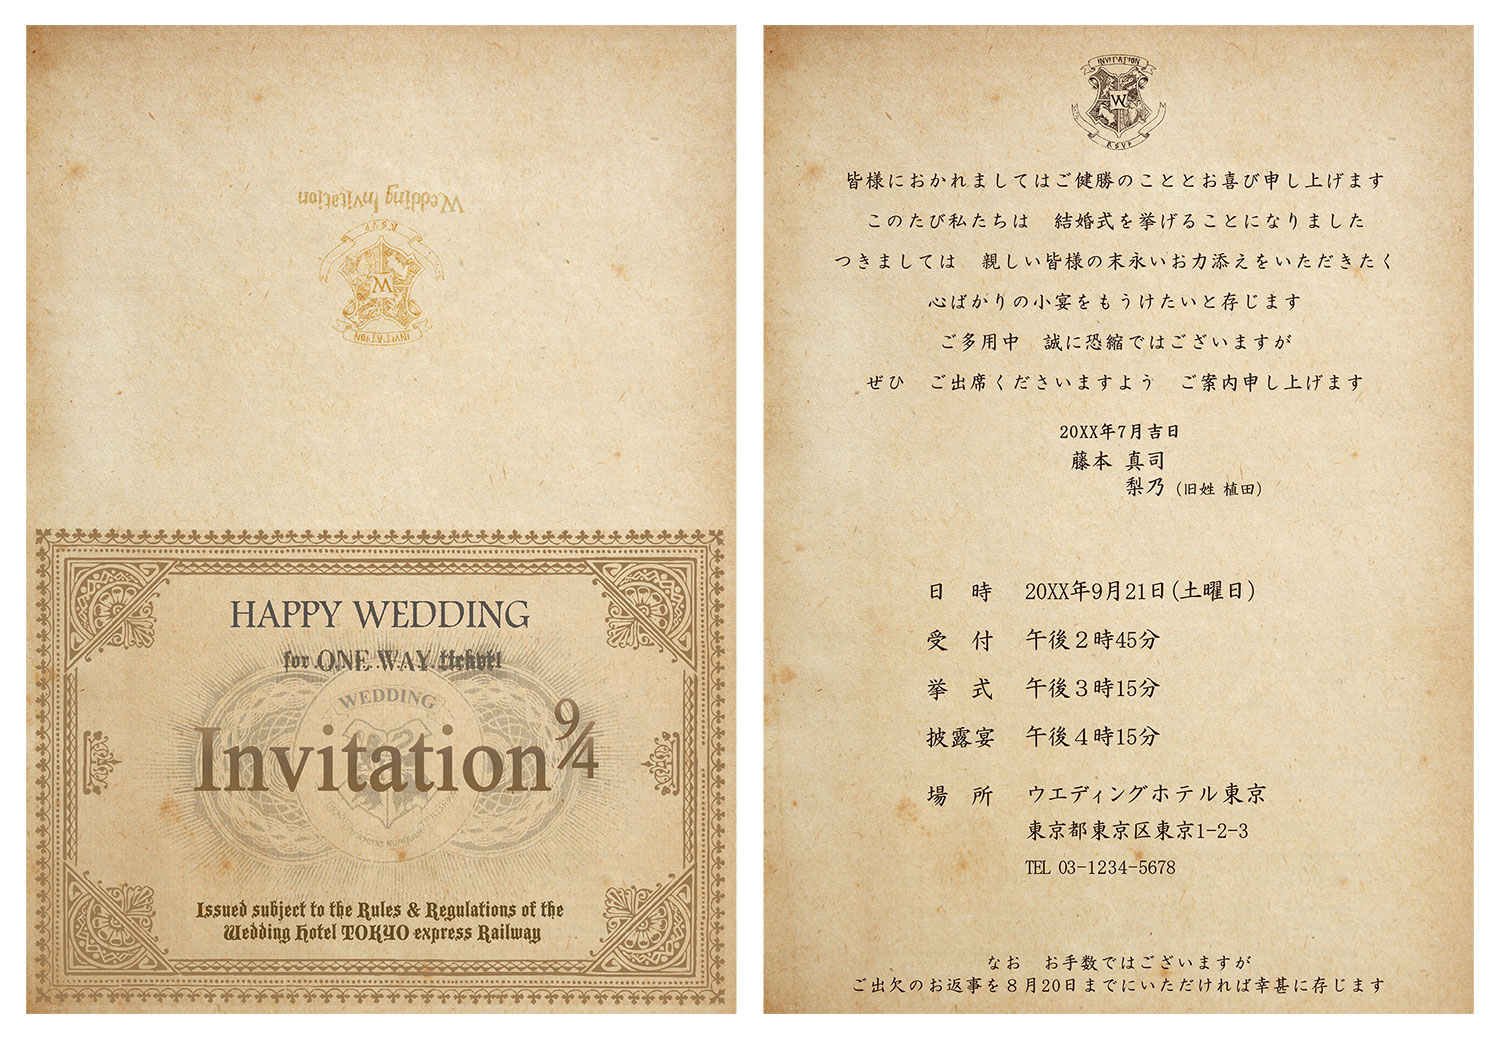 ハリーポッター風結婚式招待状